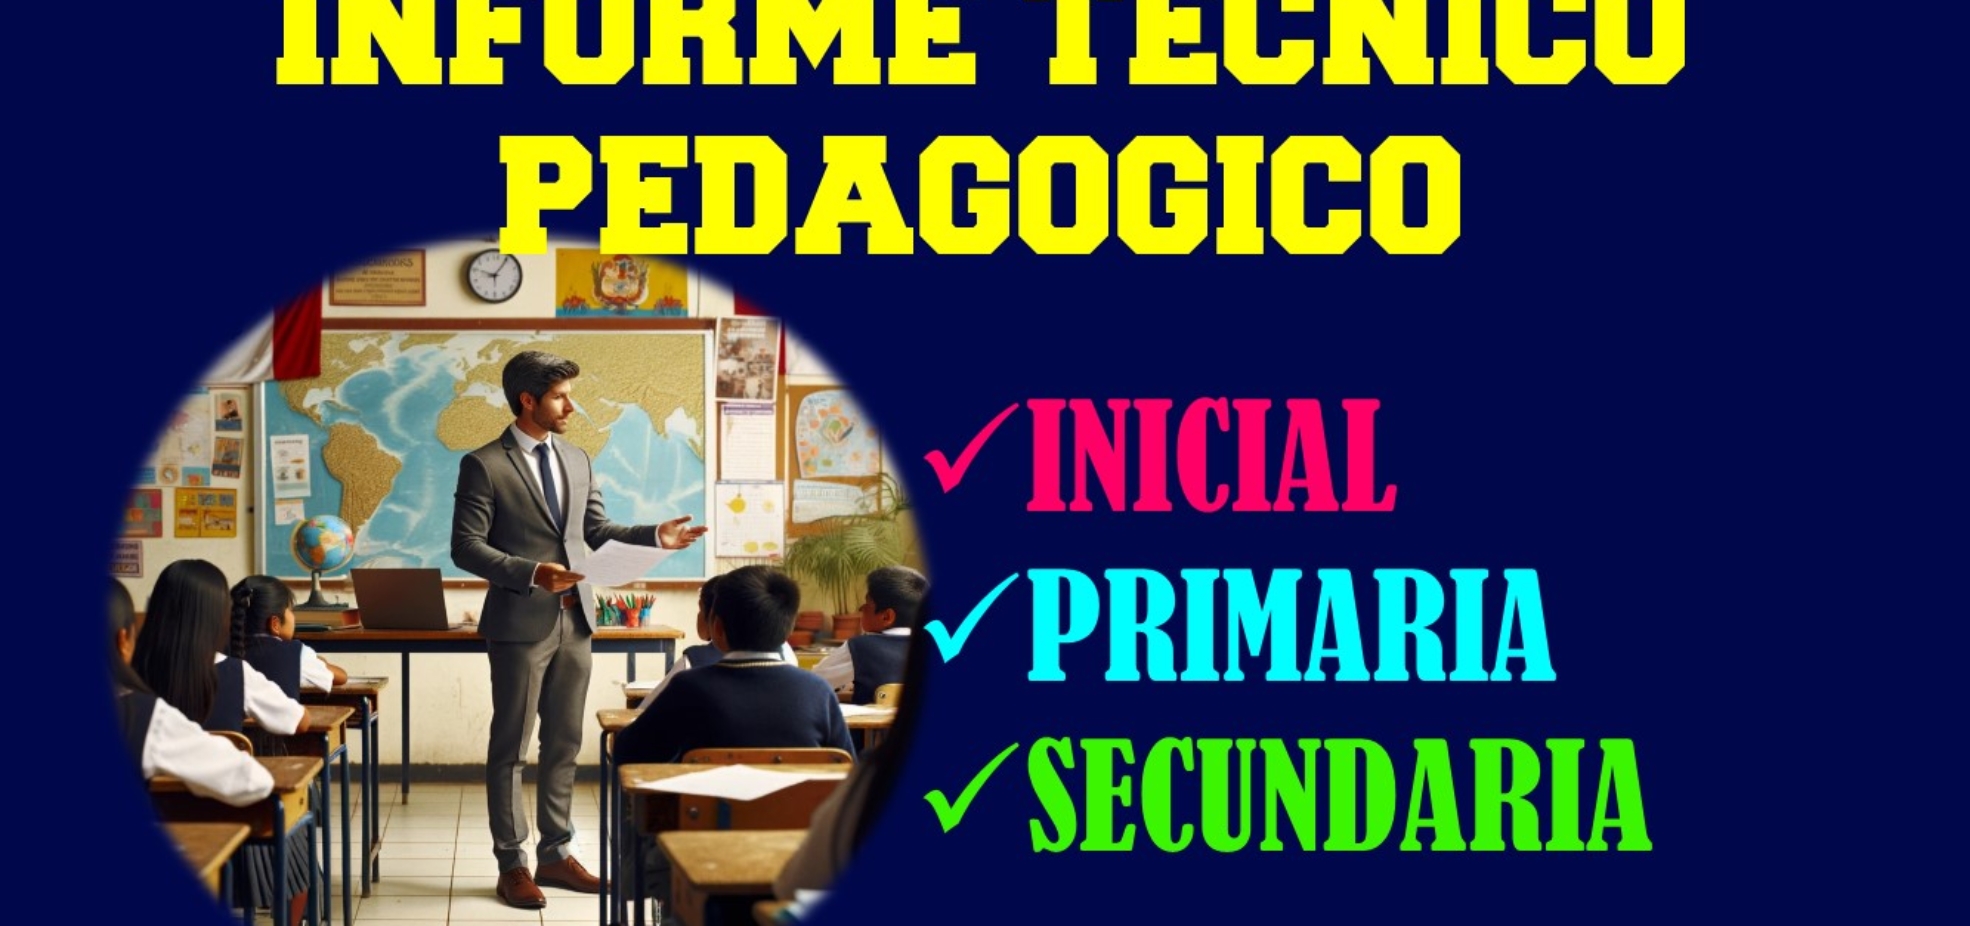 Informe técnico pedagógico para inicial primaria y secundaria